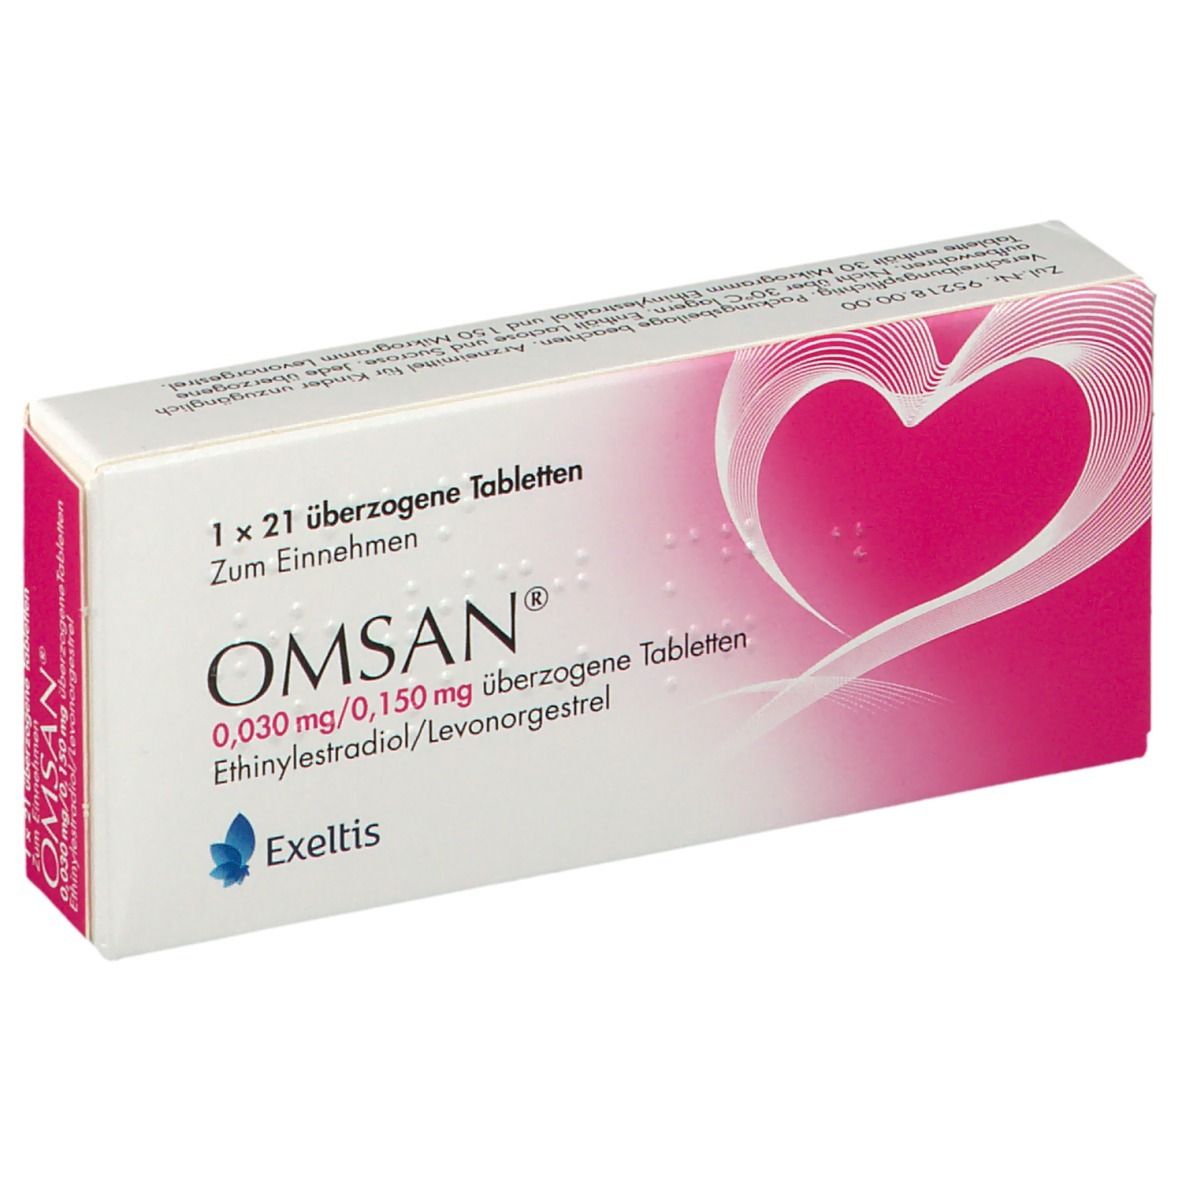 OMSAN 0,03 mg/0,15 mg